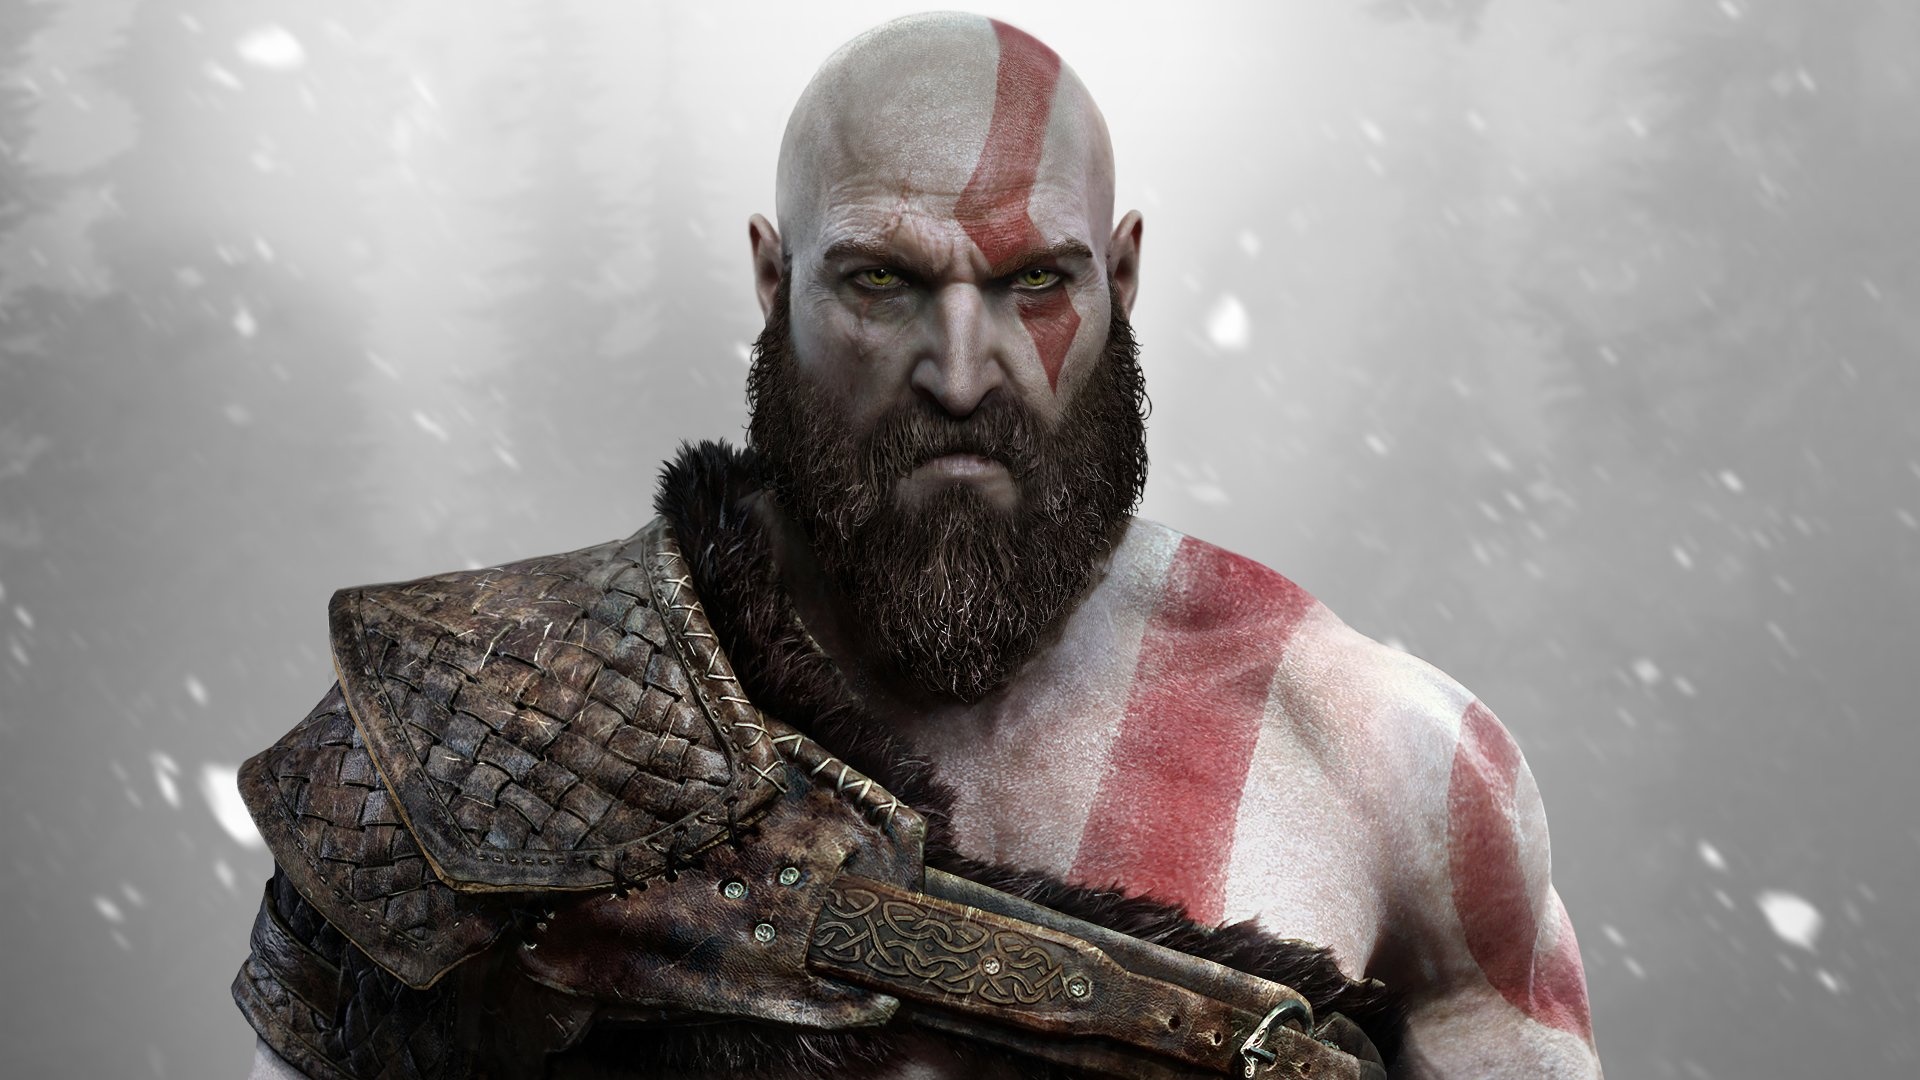 4K Ultra HD Kratos, God of War wallpapers, High-resolution gaming art, 1920x1080 Full HD Desktop